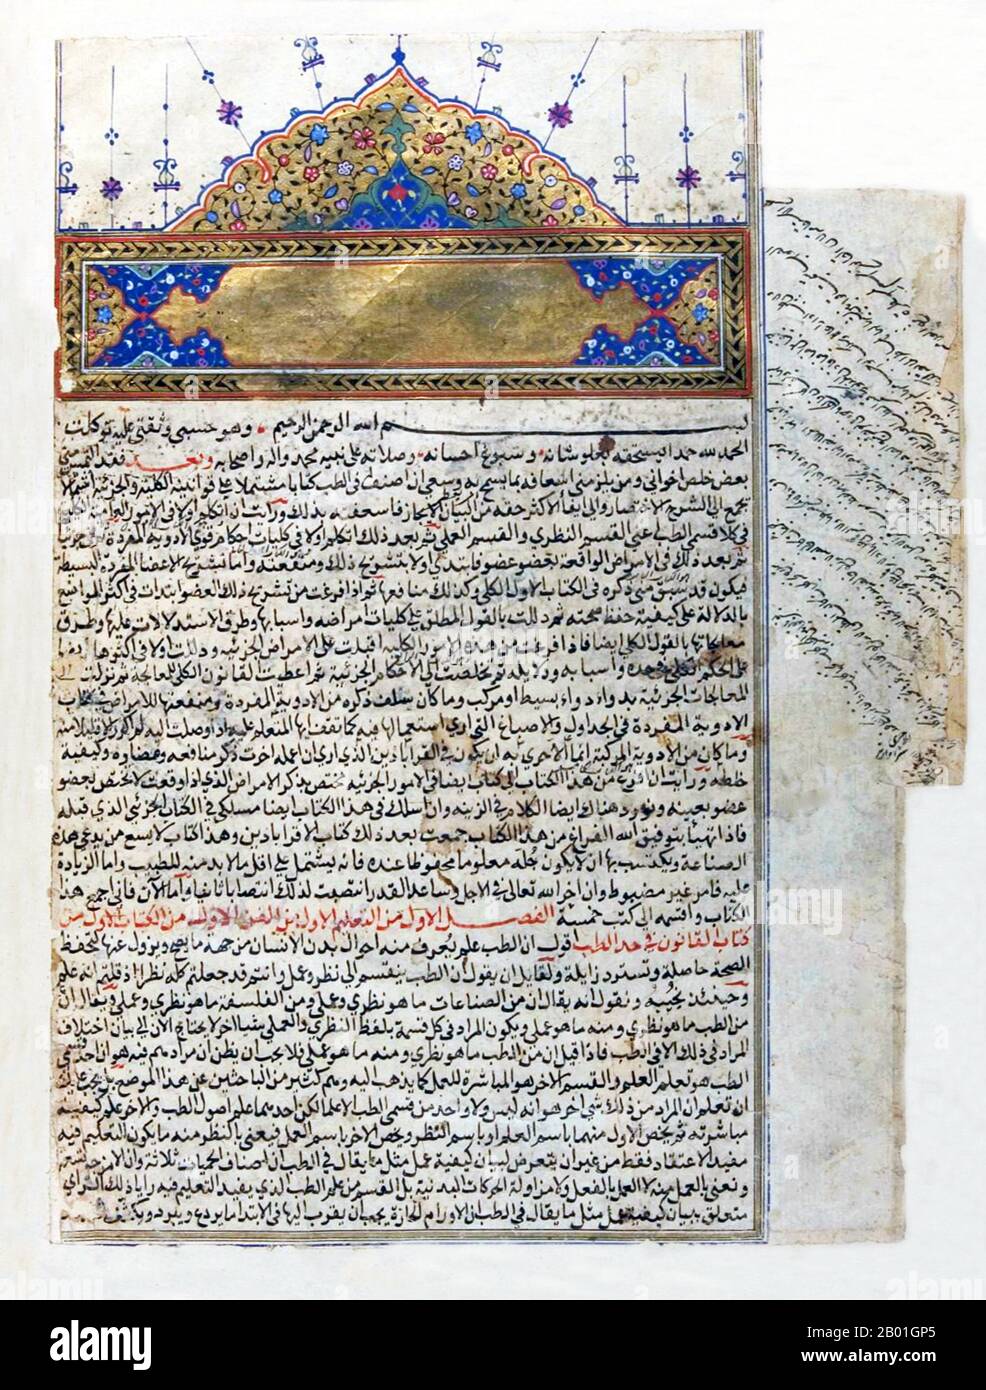 Usbekistan/Iran/Persien: Eröffnungsdekoration und Berufung auf Allah aus einem Manuskript aus dem 16. Jahrhundert von Ibn Sinas (Avicennas) Canon, c. 1597-1598. Abū ʿAlī al-Ḥusayn ibn ʿAbd Allāh ibn Sīnā (c. 980-1037), allgemein bekannt als Ibn Sīnā oder unter seinem lateinisierten Namen Avicenna, war ein persischer Polymathematiker, der fast 450 Abhandlungen zu einer Vielzahl von Themen schrieb, von denen etwa 240 überlebt haben. Insbesondere konzentrieren sich 150 seiner überlebenden Abhandlungen auf Philosophie und 40 davon auf Medizin. Seine berühmtesten Werke sind „das Buch der Heilung“, eine riesige philosophische und wissenschaftliche Enzyklopädie. Stockfoto